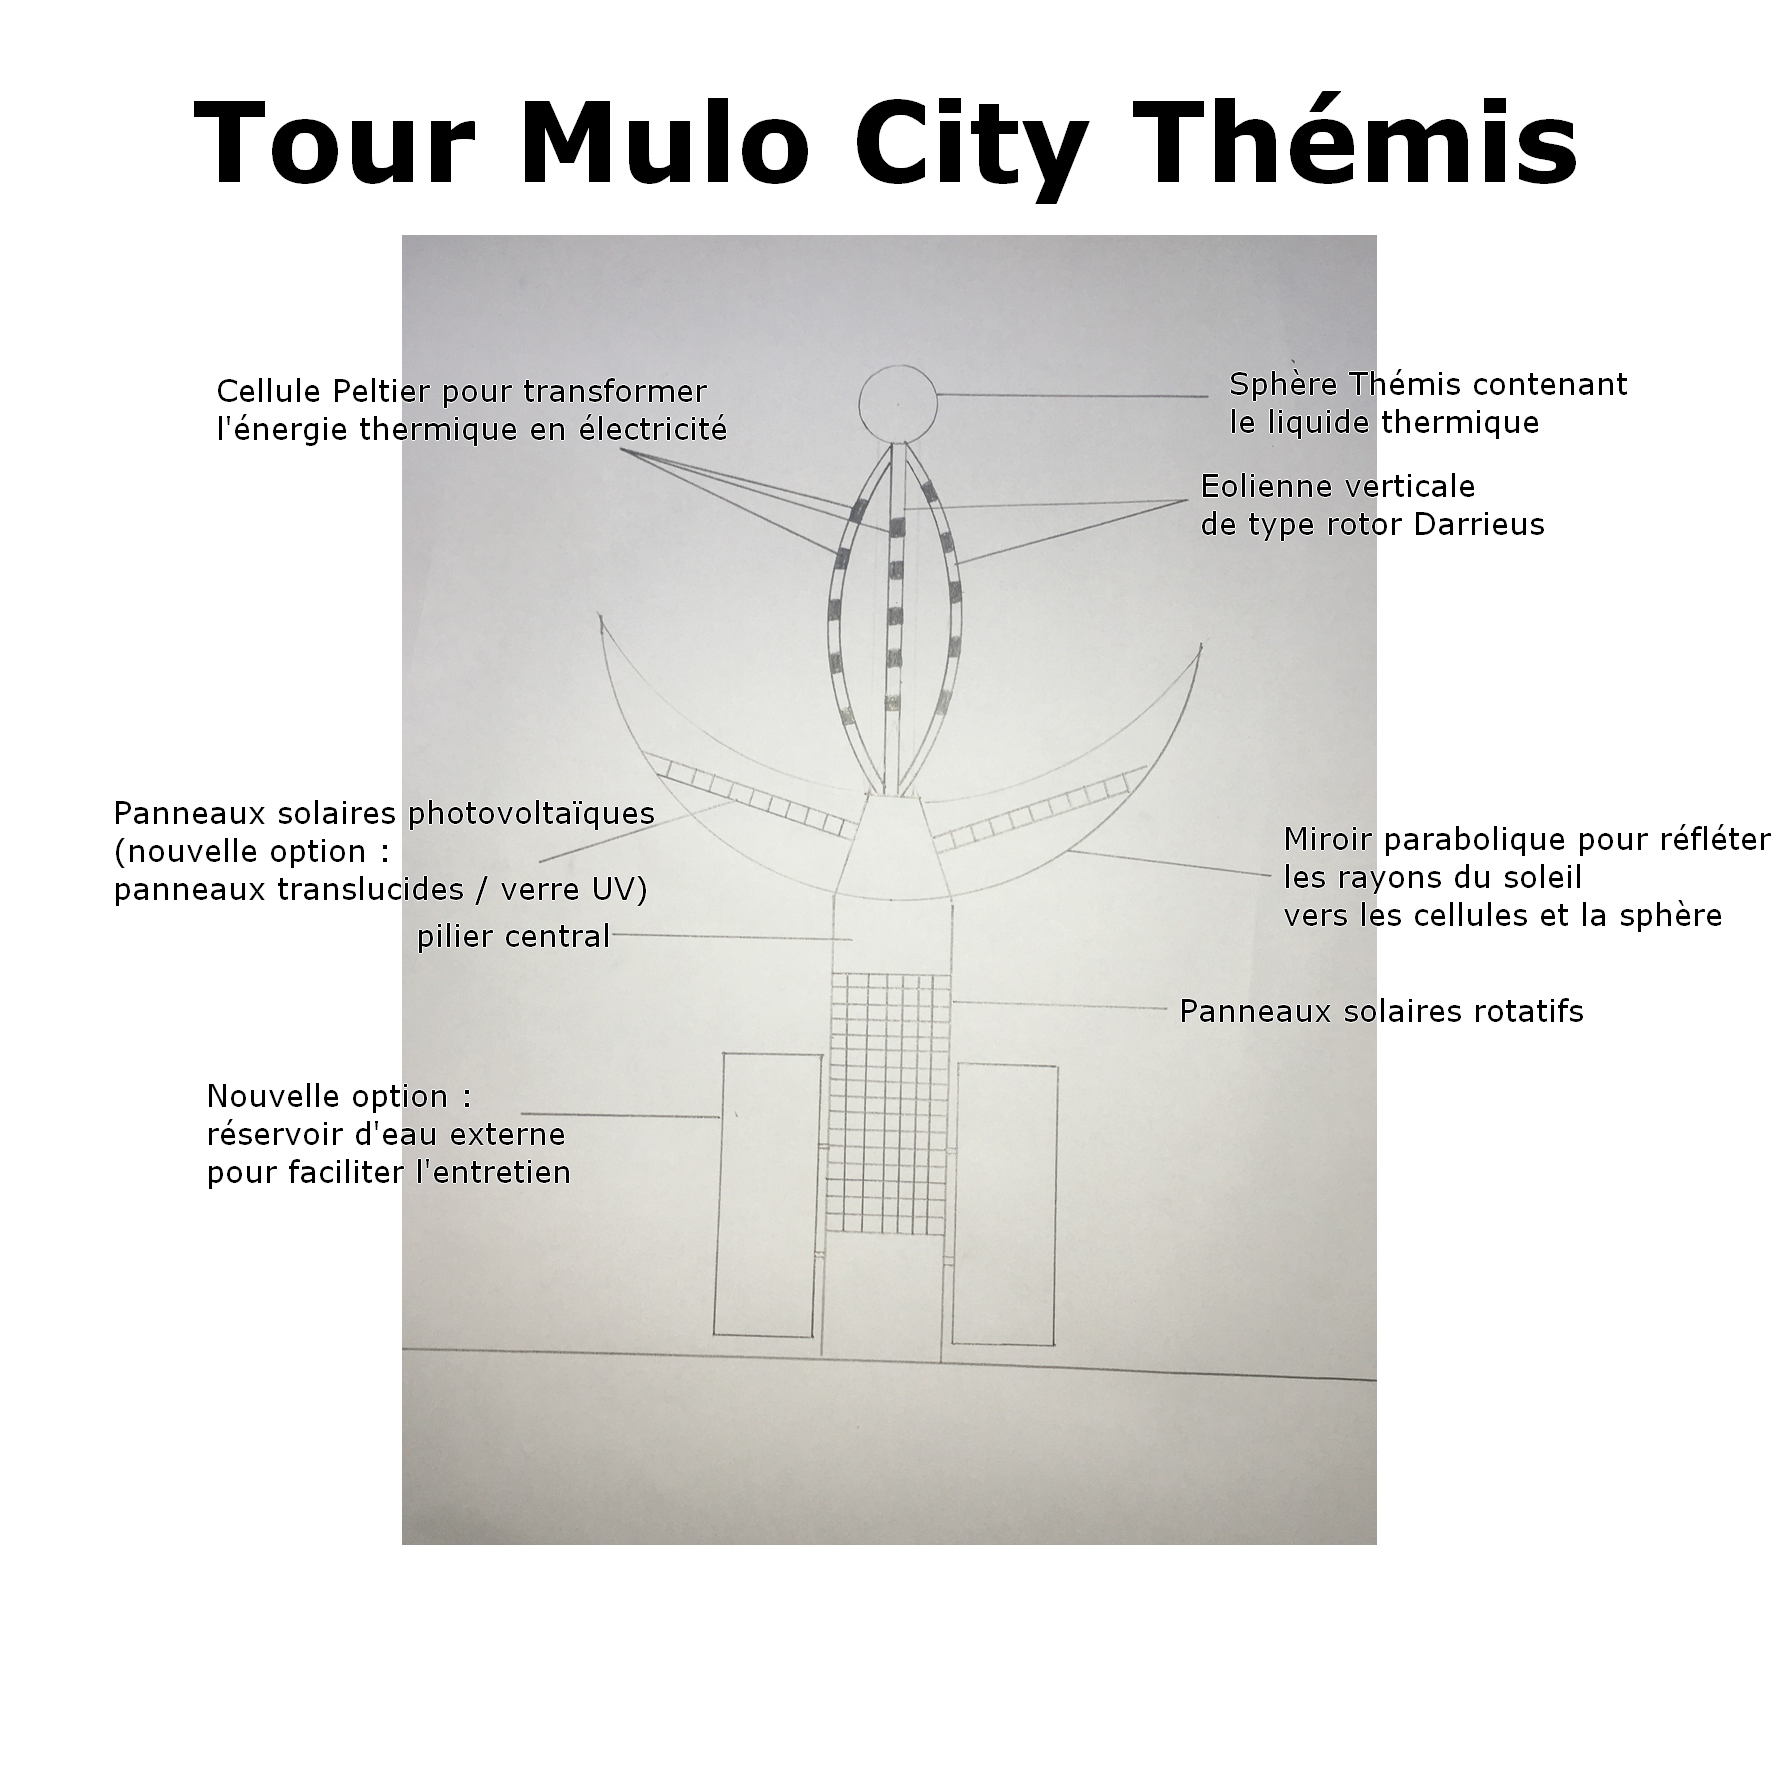 La Tour Mulo City Thémis